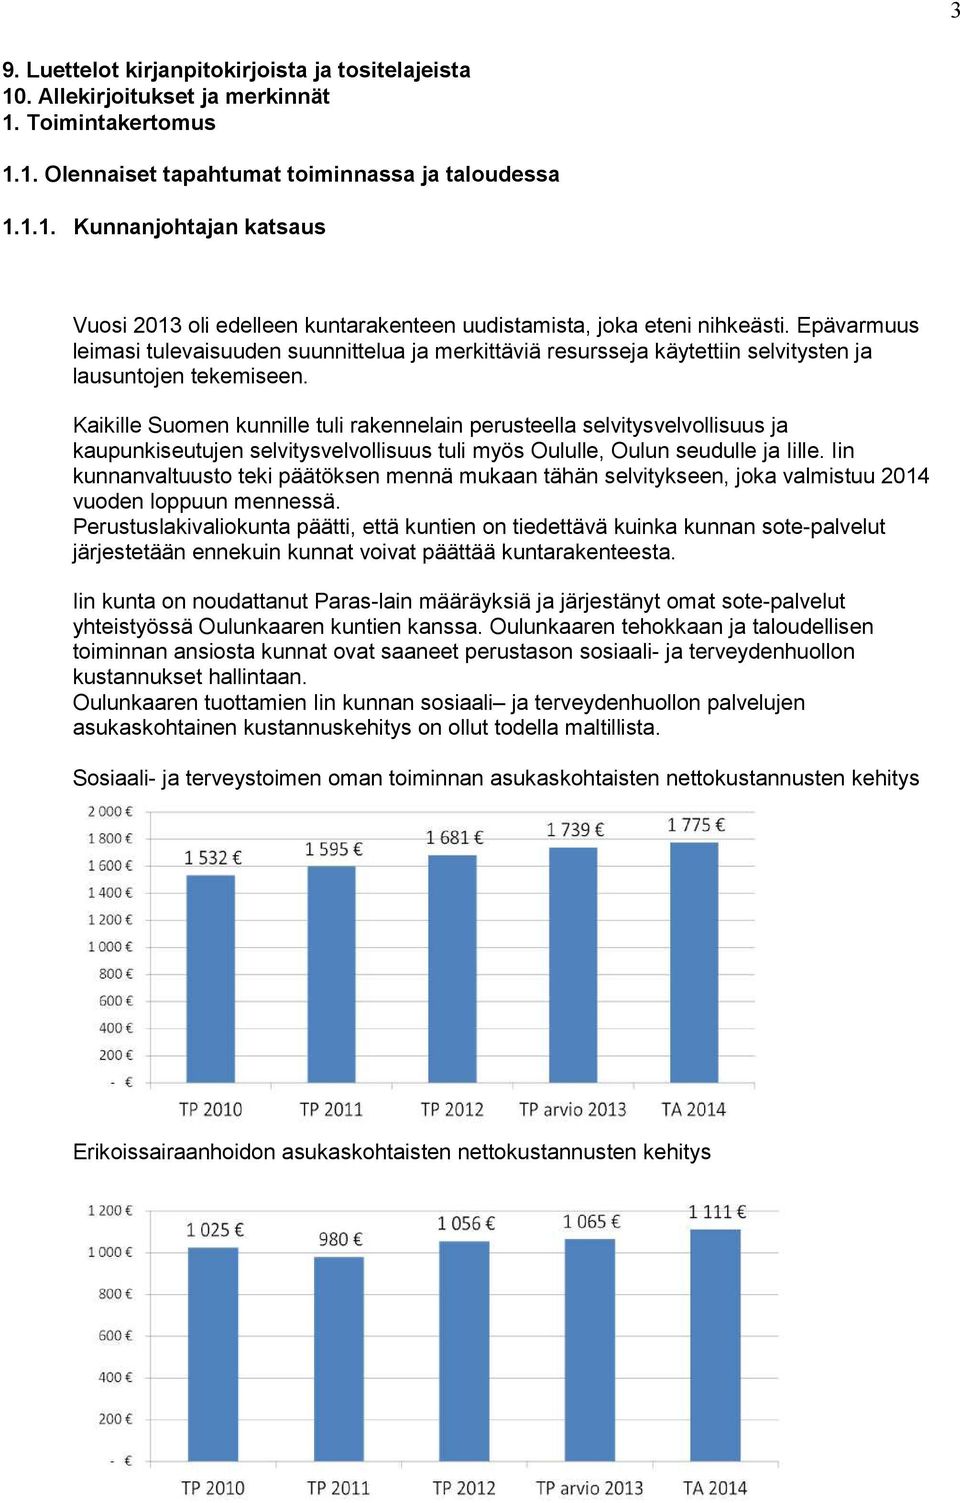 Kaikille Suomen kunnille tuli rakennelain perusteella selvitysvelvollisuus ja kaupunkiseutujen selvitysvelvollisuus tuli myös Oululle, Oulun seudulle ja Iille.